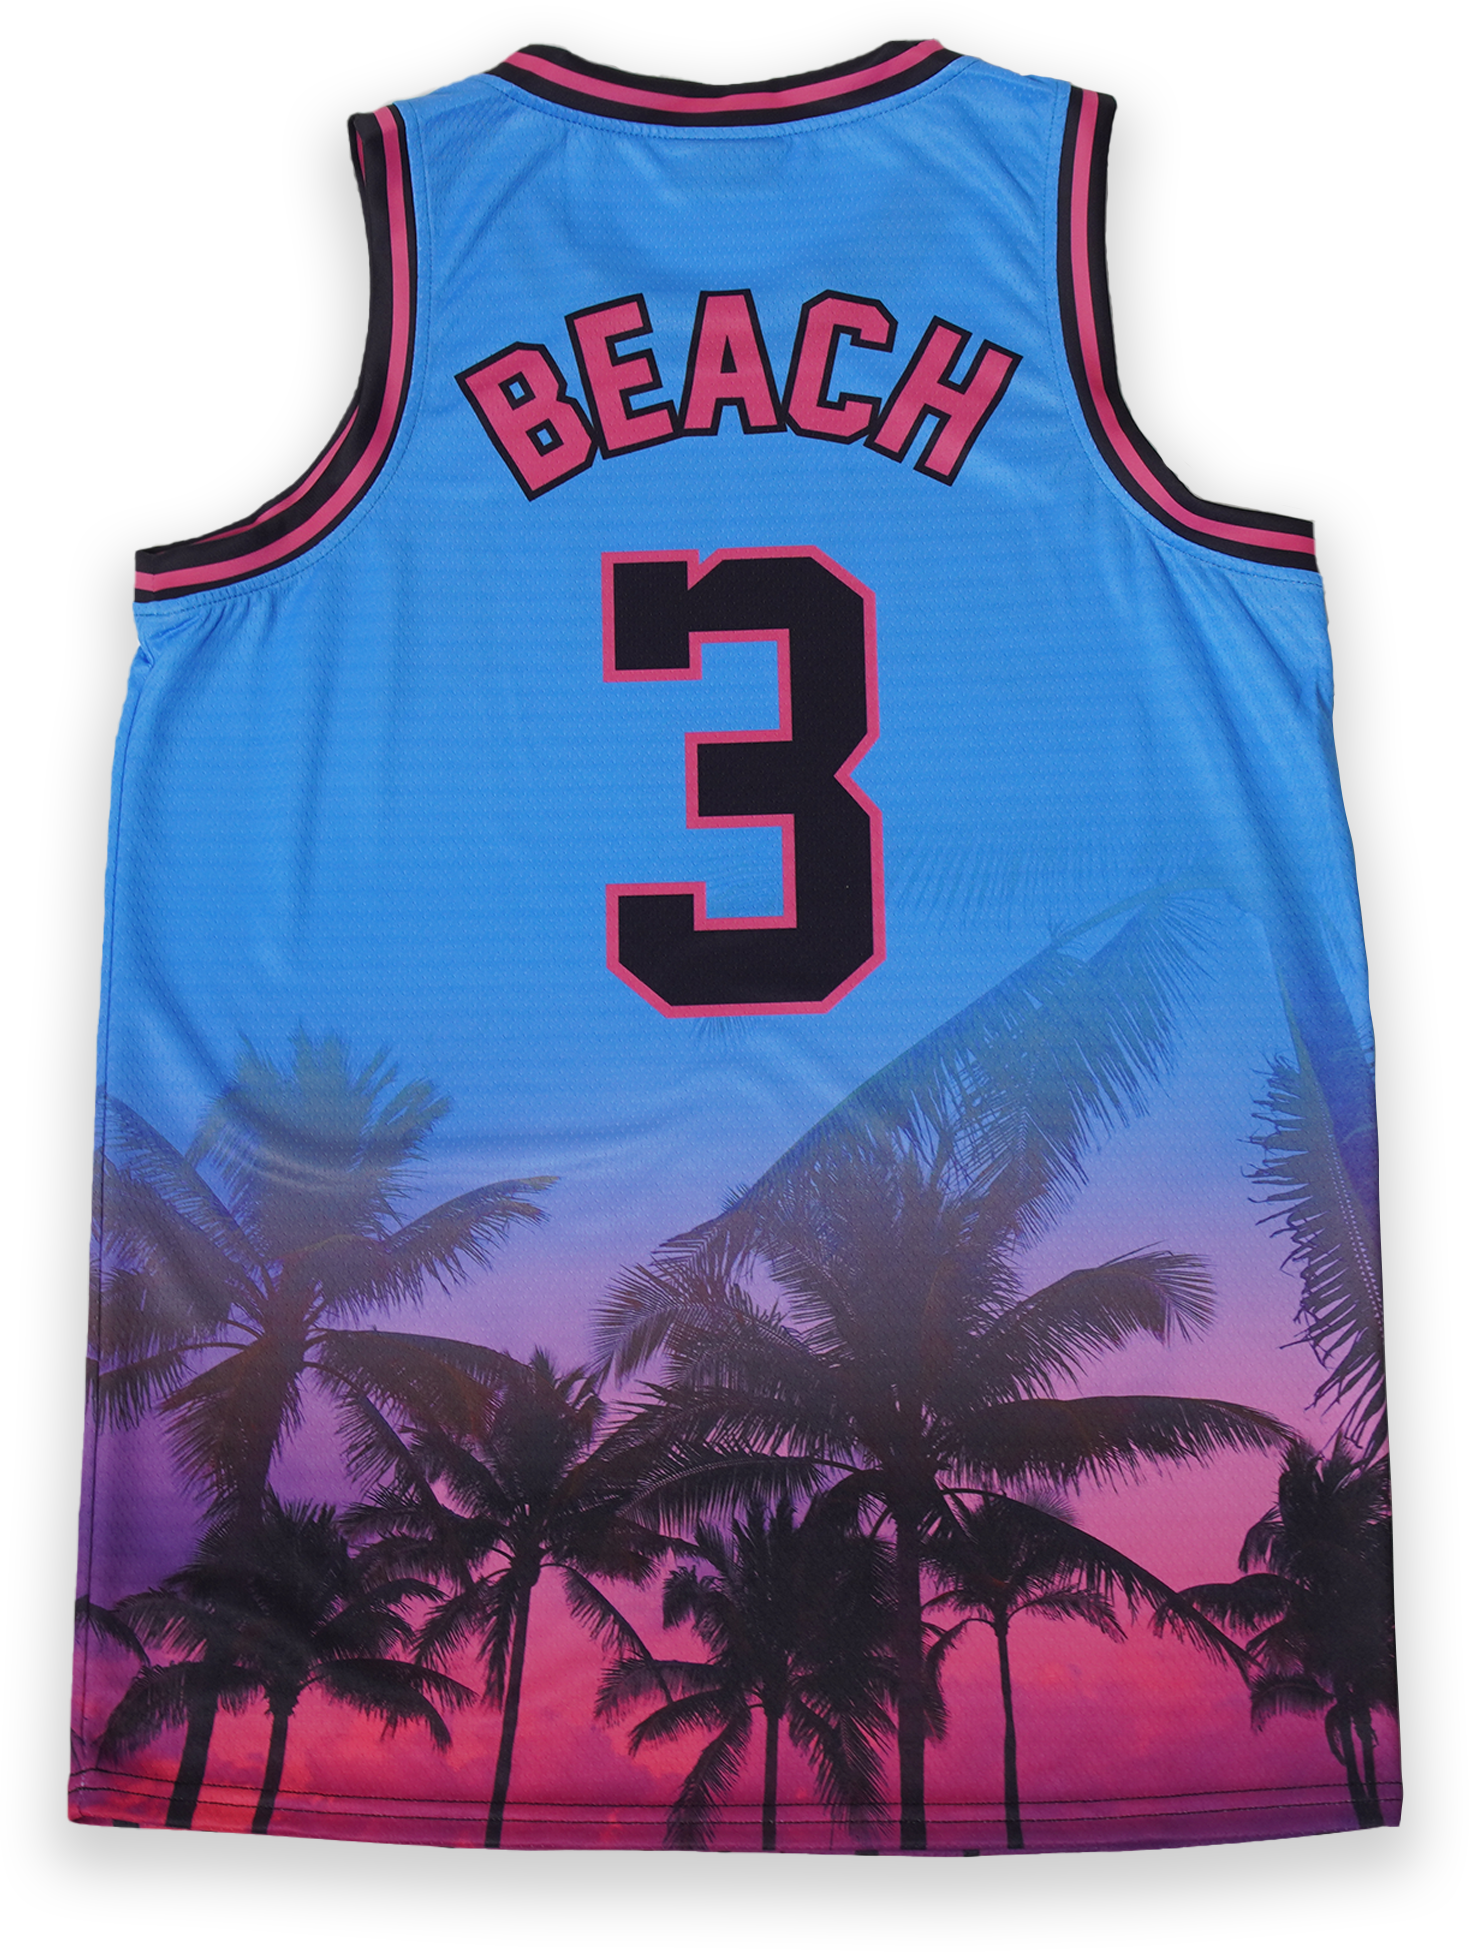 heat south beach jersey